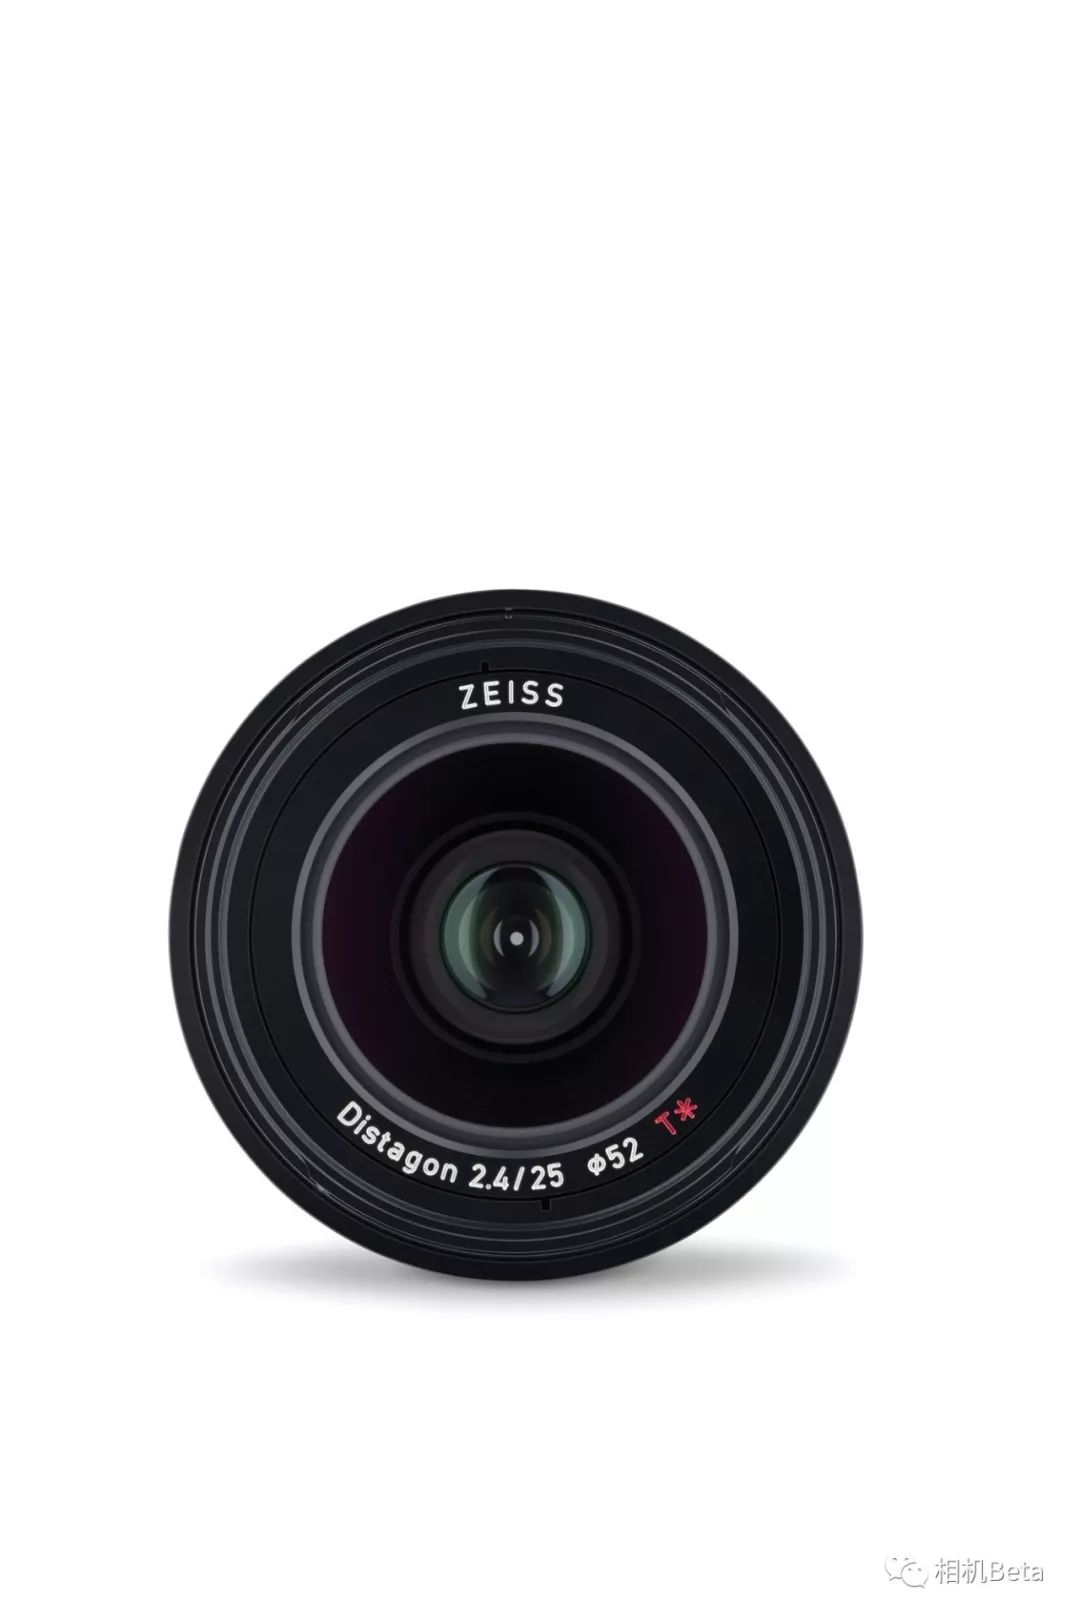 蔡司loxia 25mm f24镜头正式发布,售价1299美元